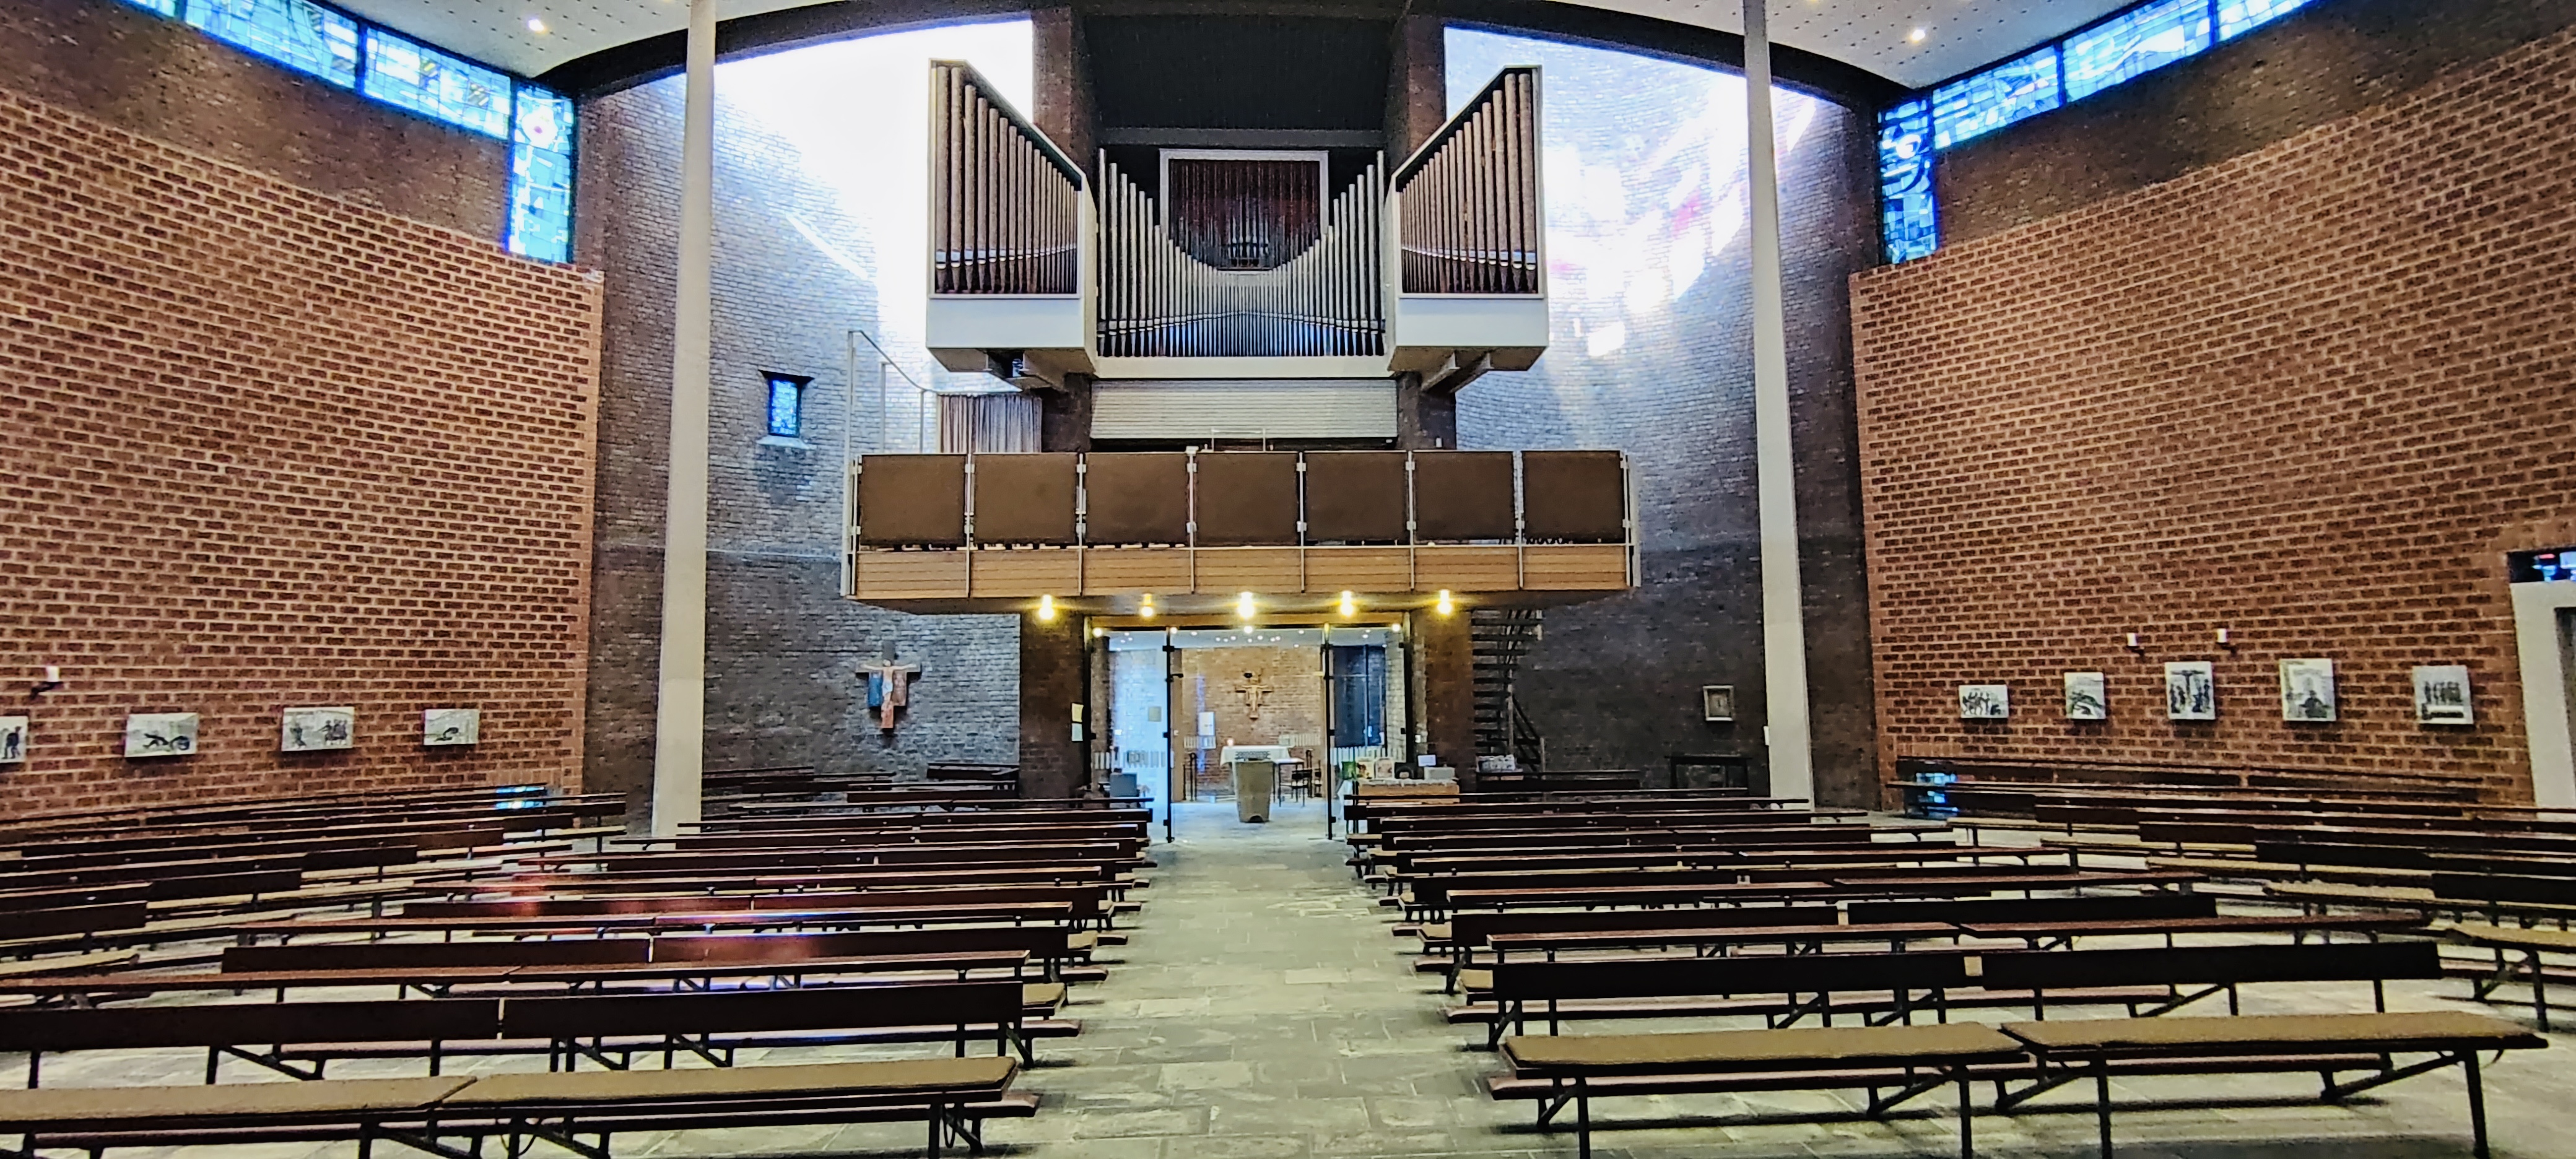 St. Franziskus Innen Richtung Orgel